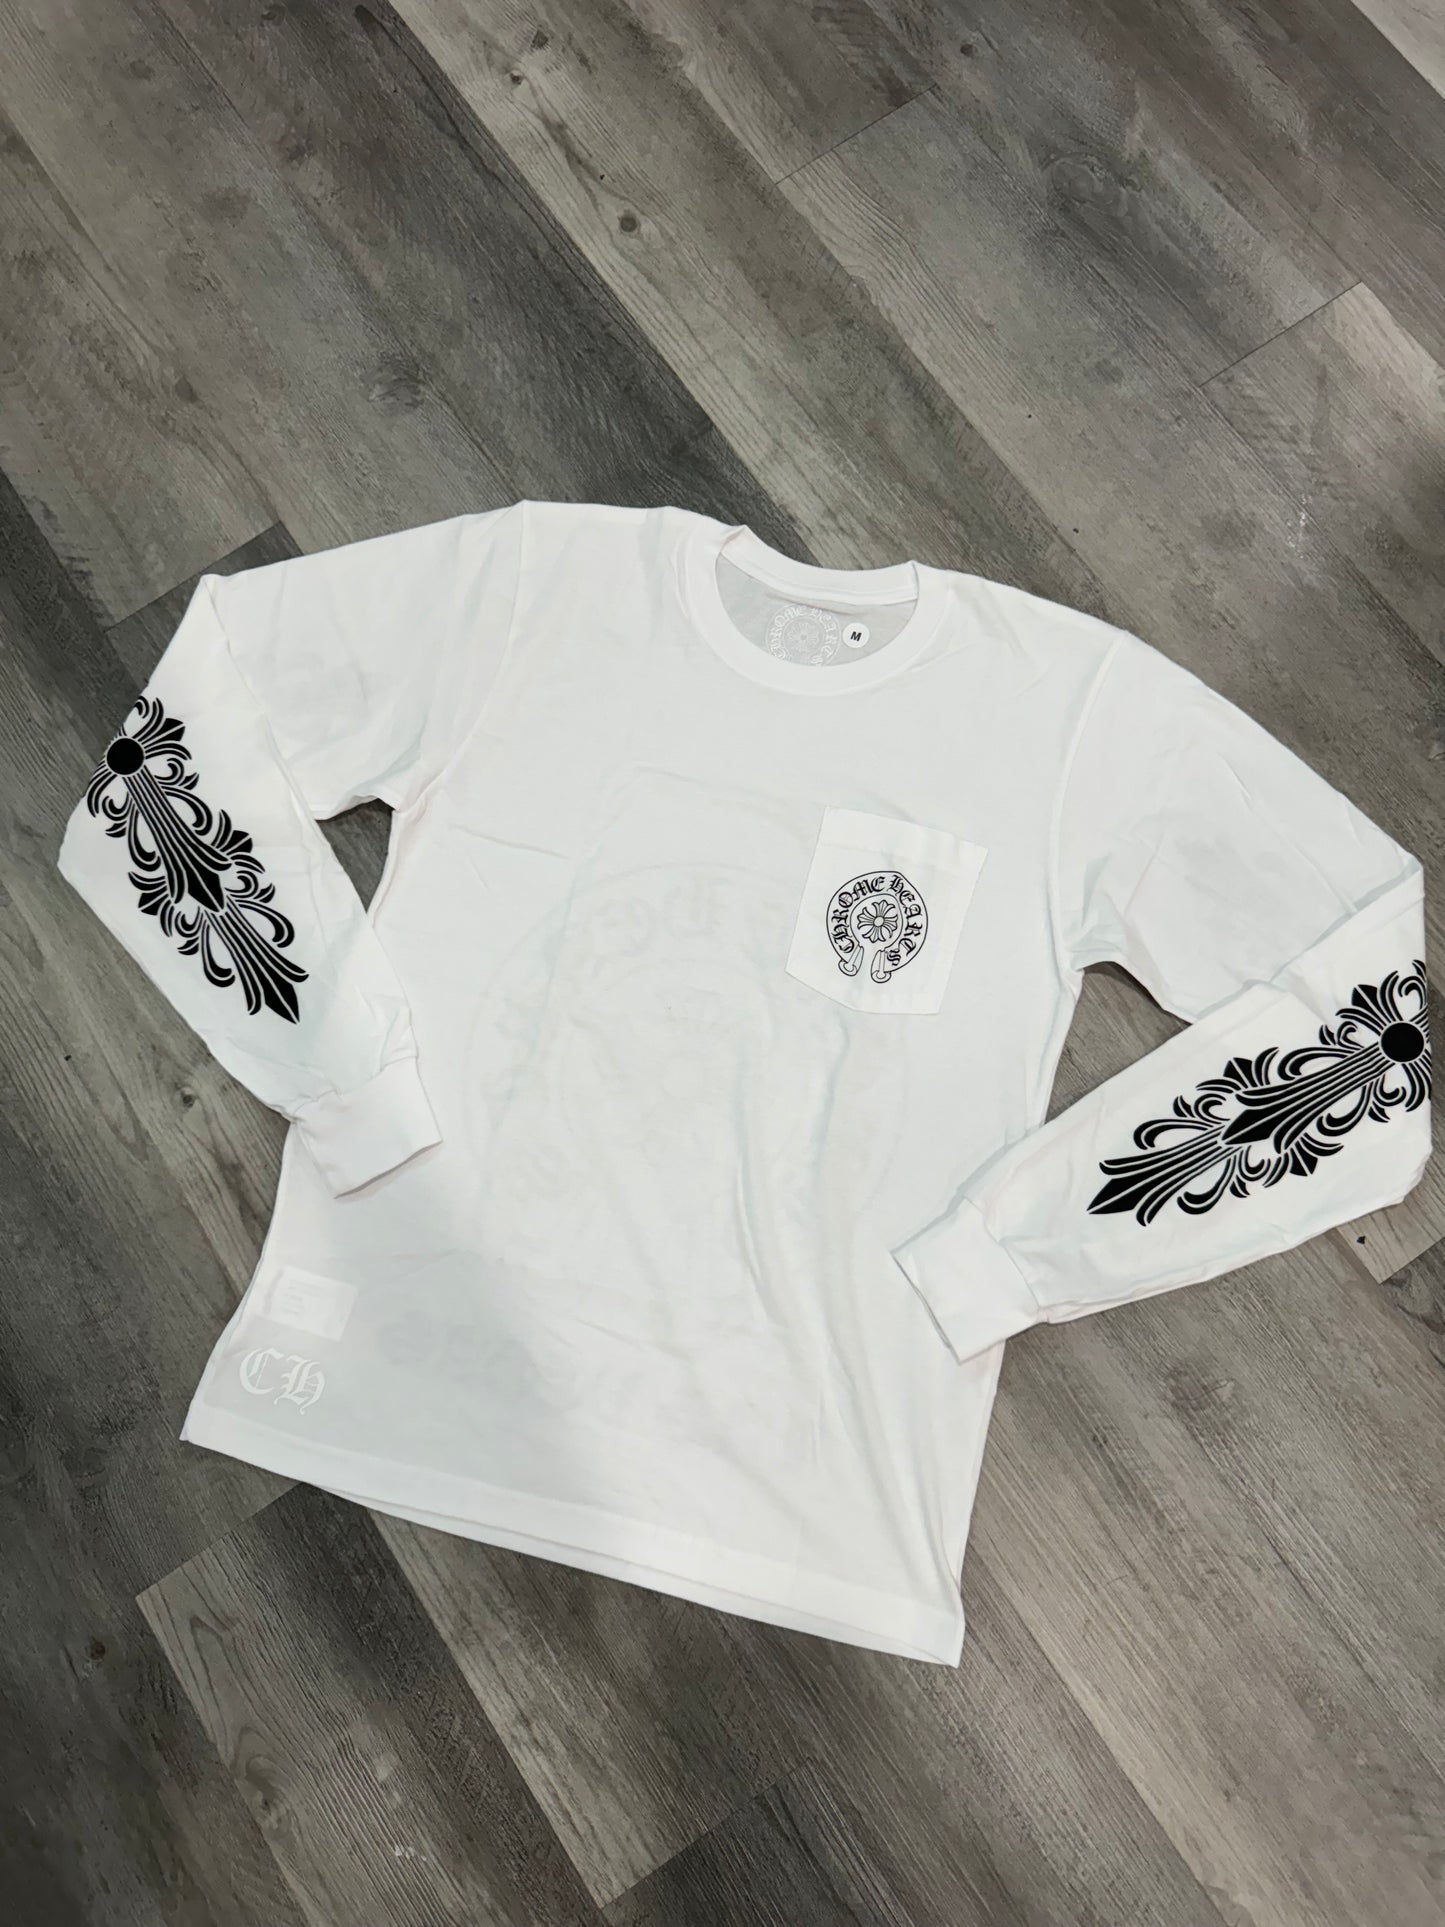 Chrome Hearts Las Vegas Exclusive L/S T-shirt White